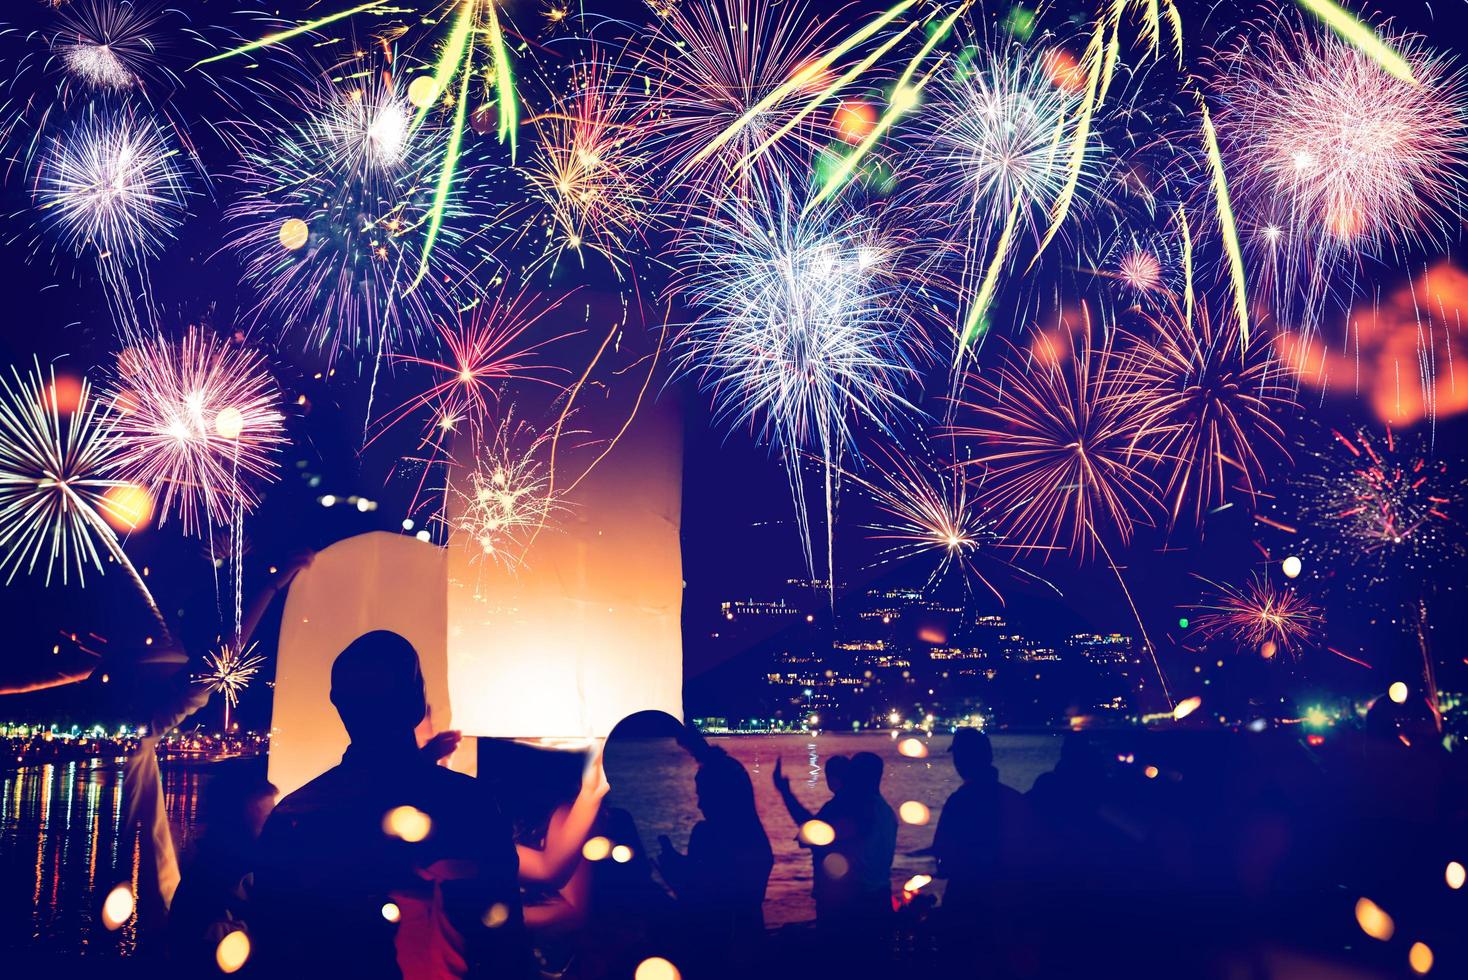 fogos de artifício com silhuetas de pessoas em um feriado events.new ano fogos de artifício na praia. viajantes e pessoas comemoram o ano novo em kamala beach phuket, tailândia. foto